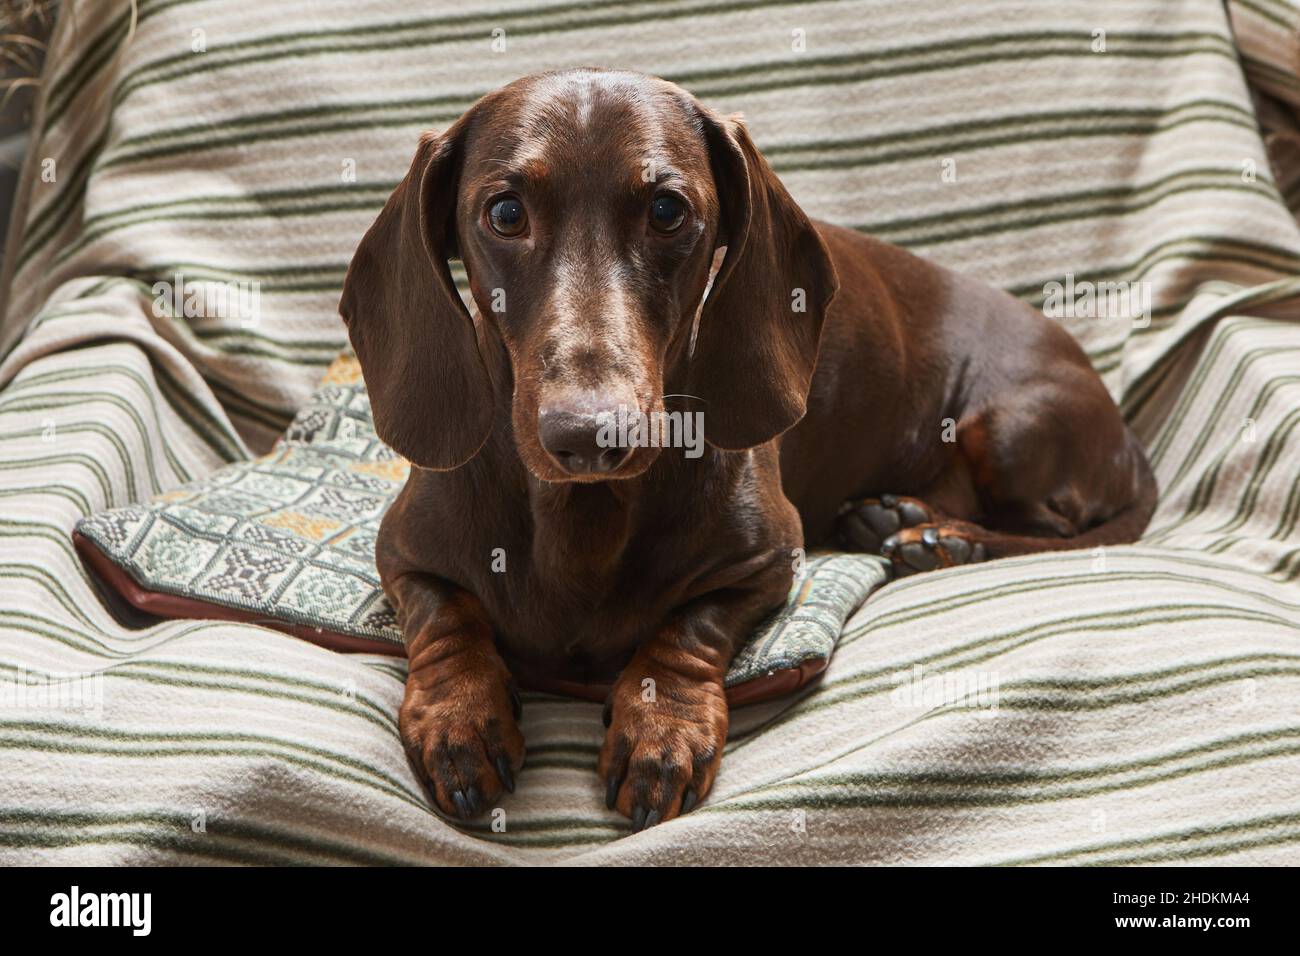 Der Schokoladendackel liegt in einem Sessel auf einer gestreiften Decke. Stockfoto